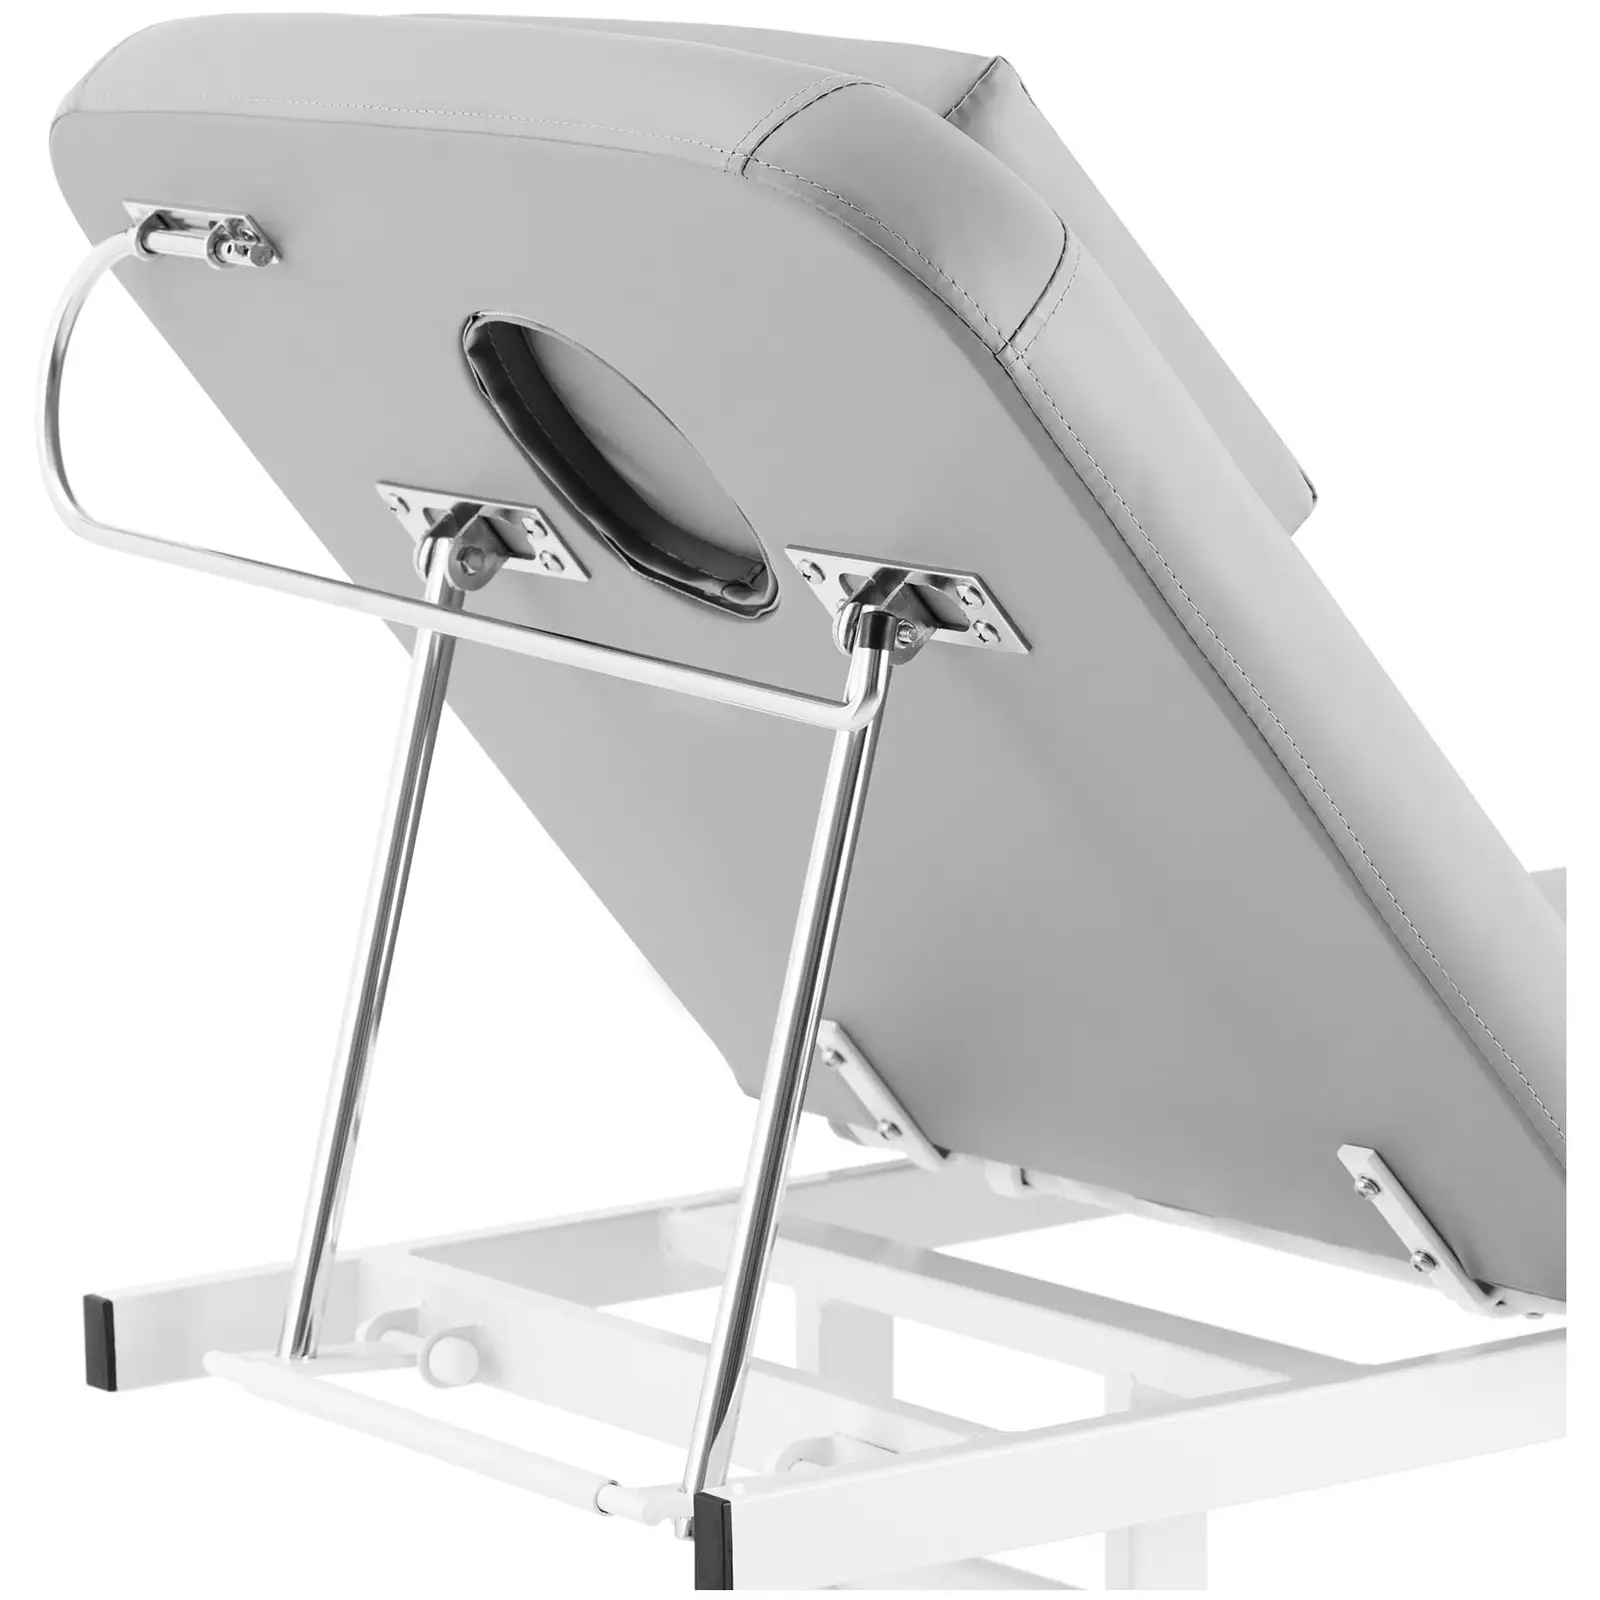 Table de massage électrique avec tabouret selle de cheval - Gris foncé